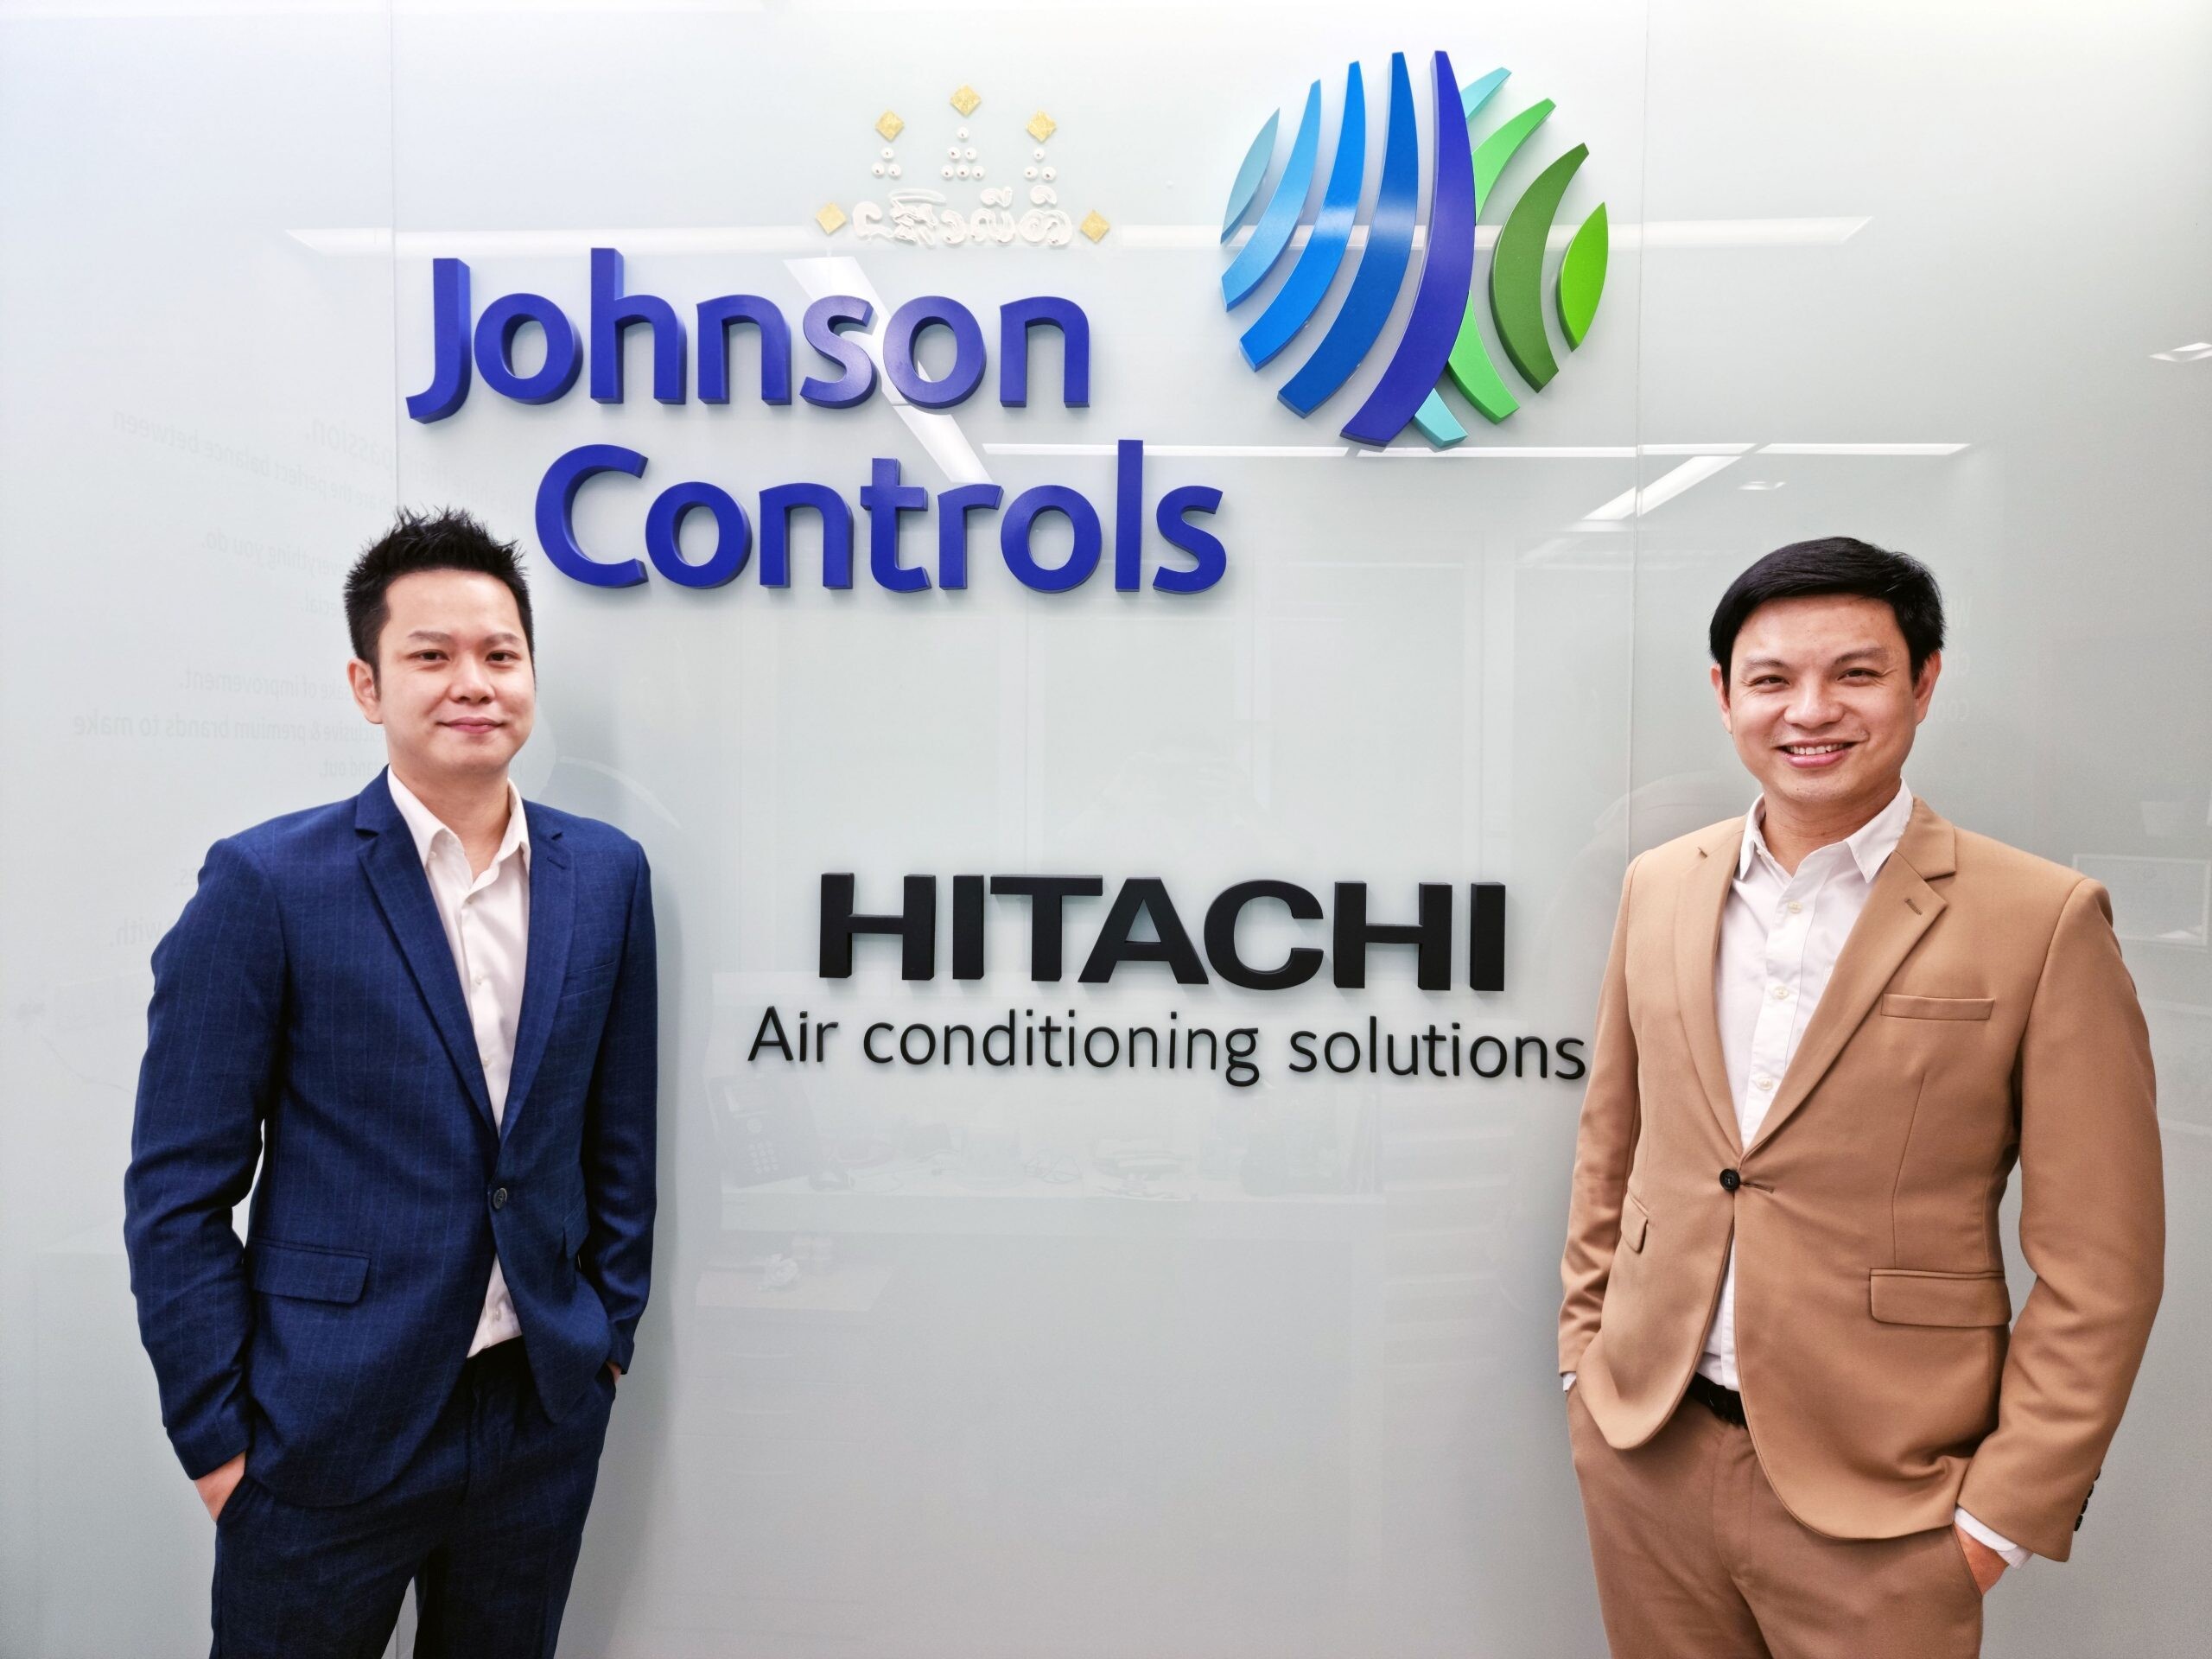 บริษัท จอห์นสัน คอนโทรลส์-ฮิตาชิ แอร์ คอนดิชั่นนิ่ง (ประเทศไทย) จำกัด ส่งแคมเปญสุดพิเศษ ซื้อเครื่องปรับอากาศ แถมประกันโควิด-19 ให้ลูกค้าทุกคน พร้อมฉลองความสำเร็จ มอบของรางวัลตัวแทนจำหน่ายดีเด่นทั่วประเทศ